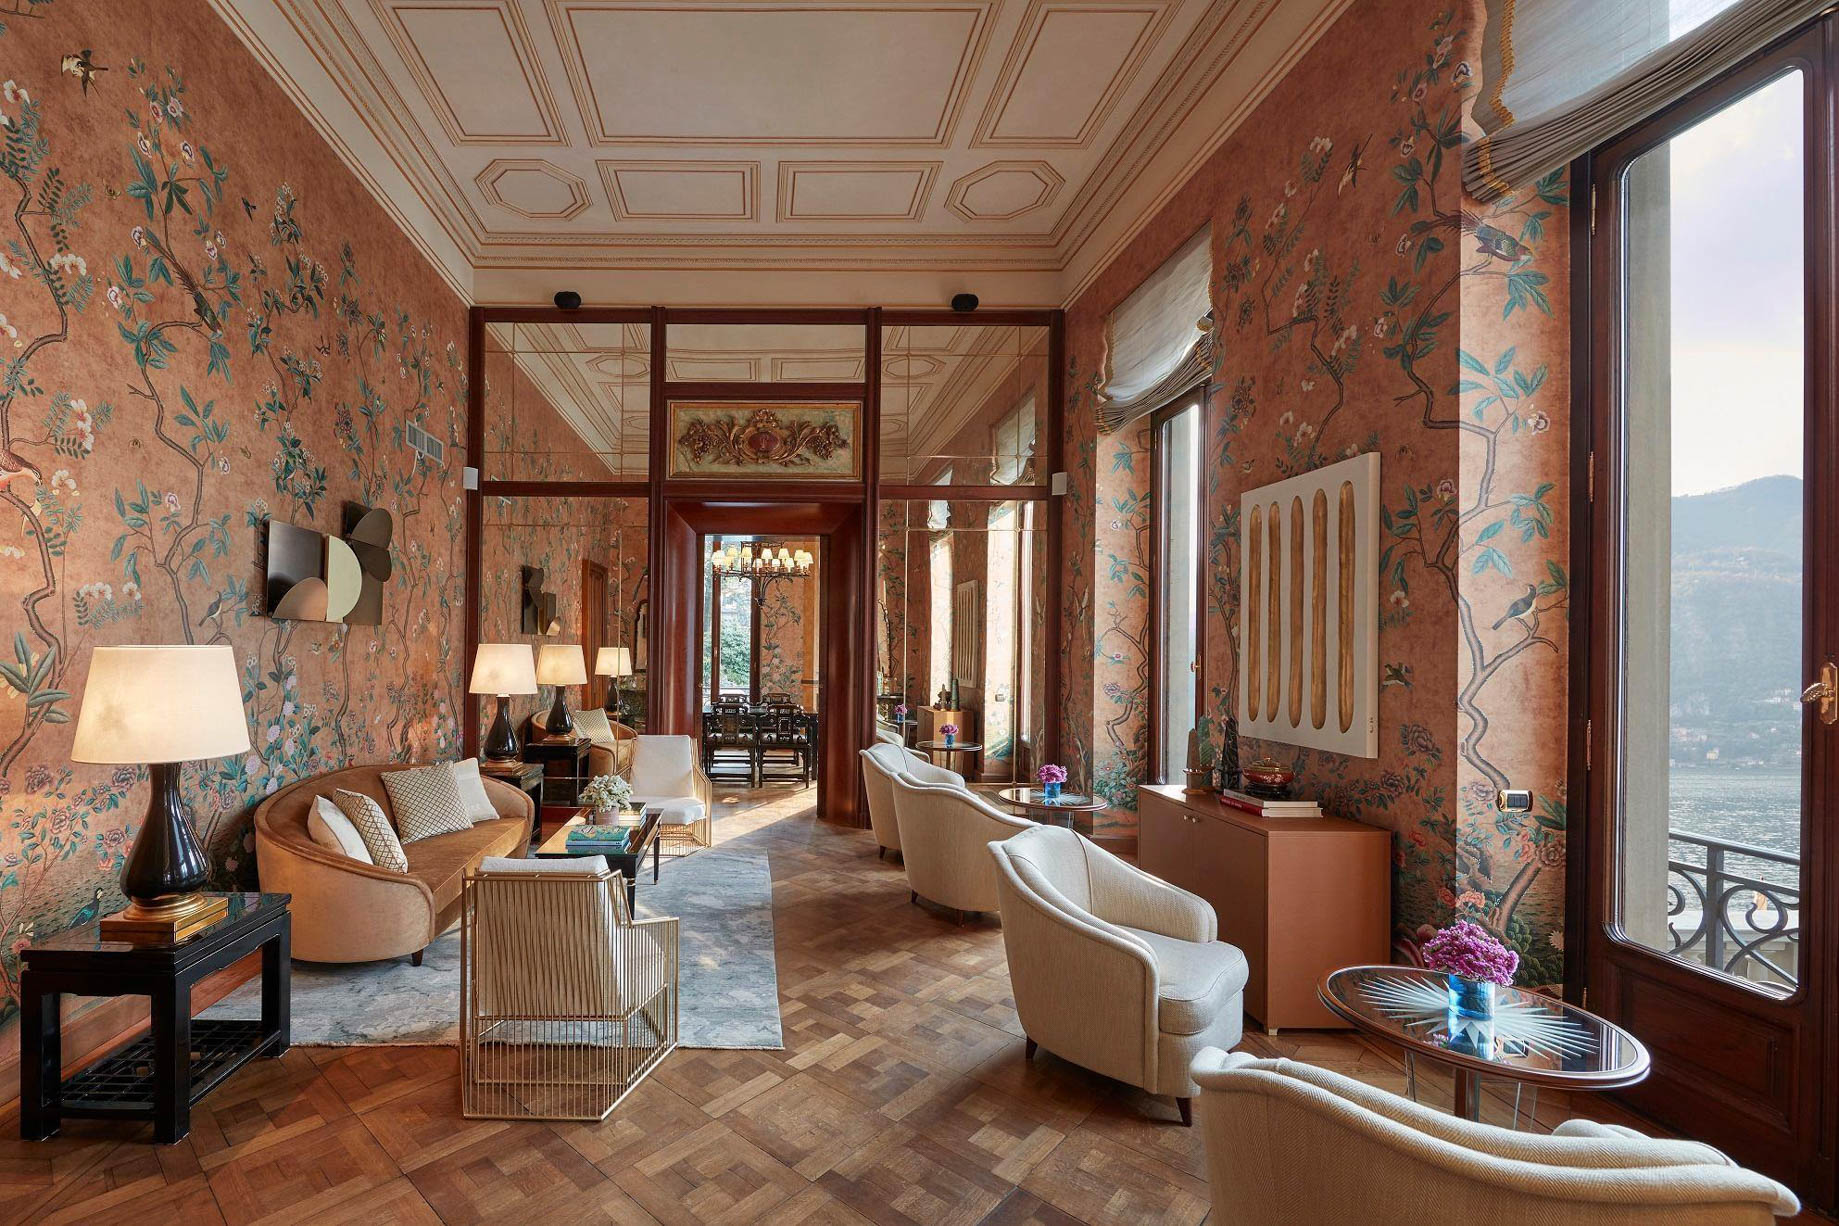 Mandarin Oriental, Lago di Como Hotel – Lake Como, Italy – Lobby